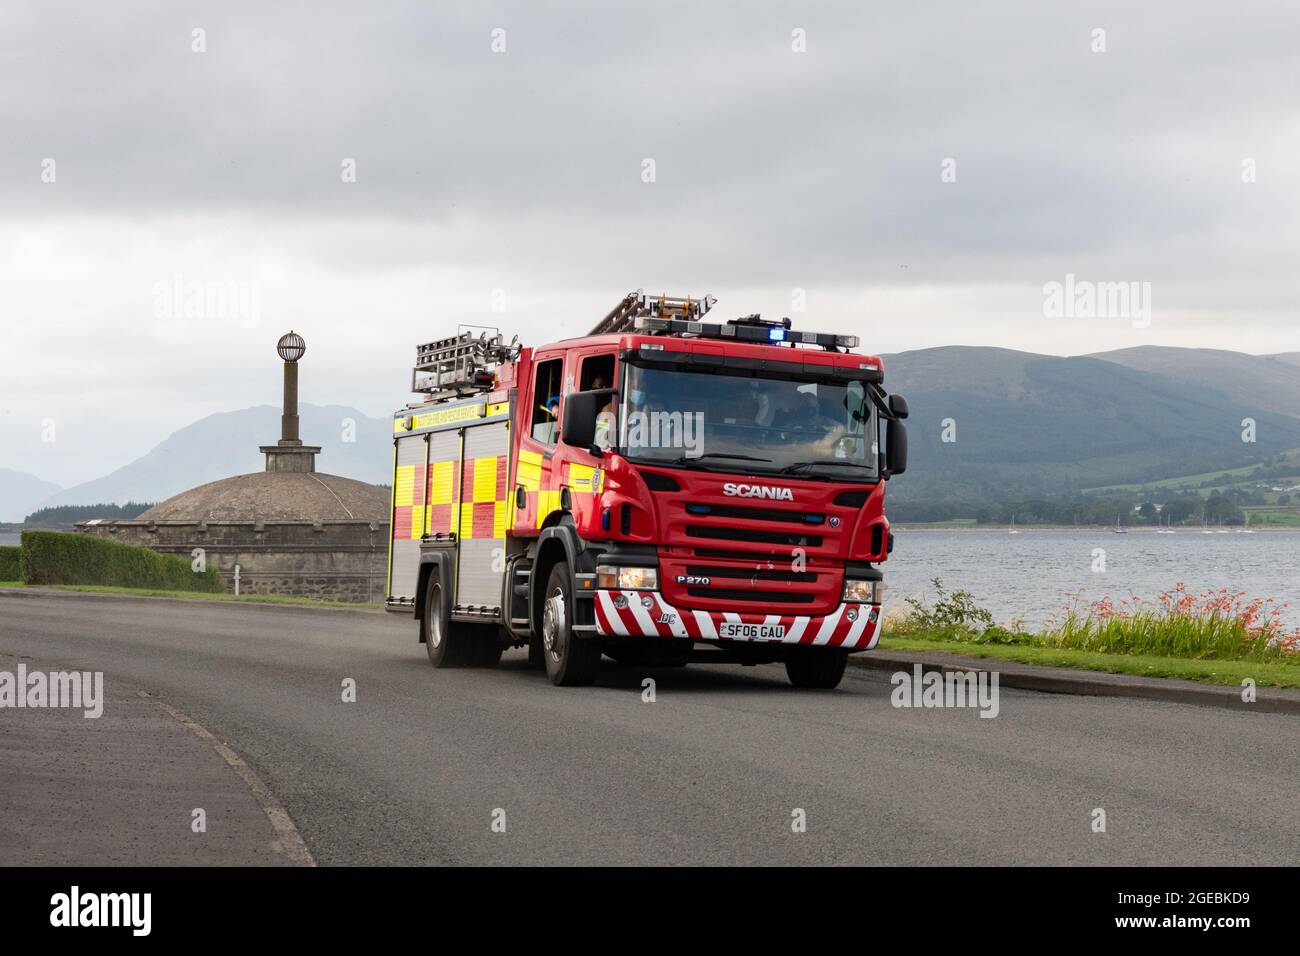 Motore antincendio con luci blu lampeggianti che rispondono all'emergenza, Rothesay, Isola di Bute, Scozia, Regno Unito Foto Stock